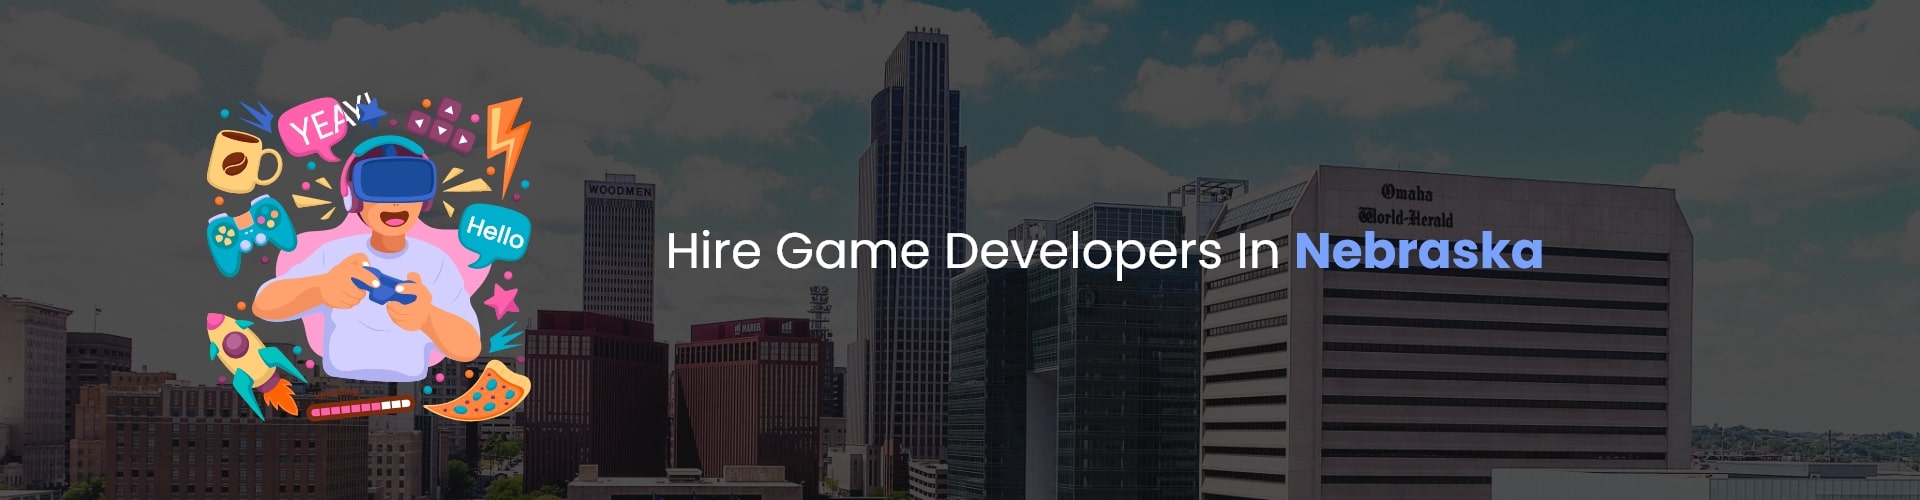 hire game developers in nebraska